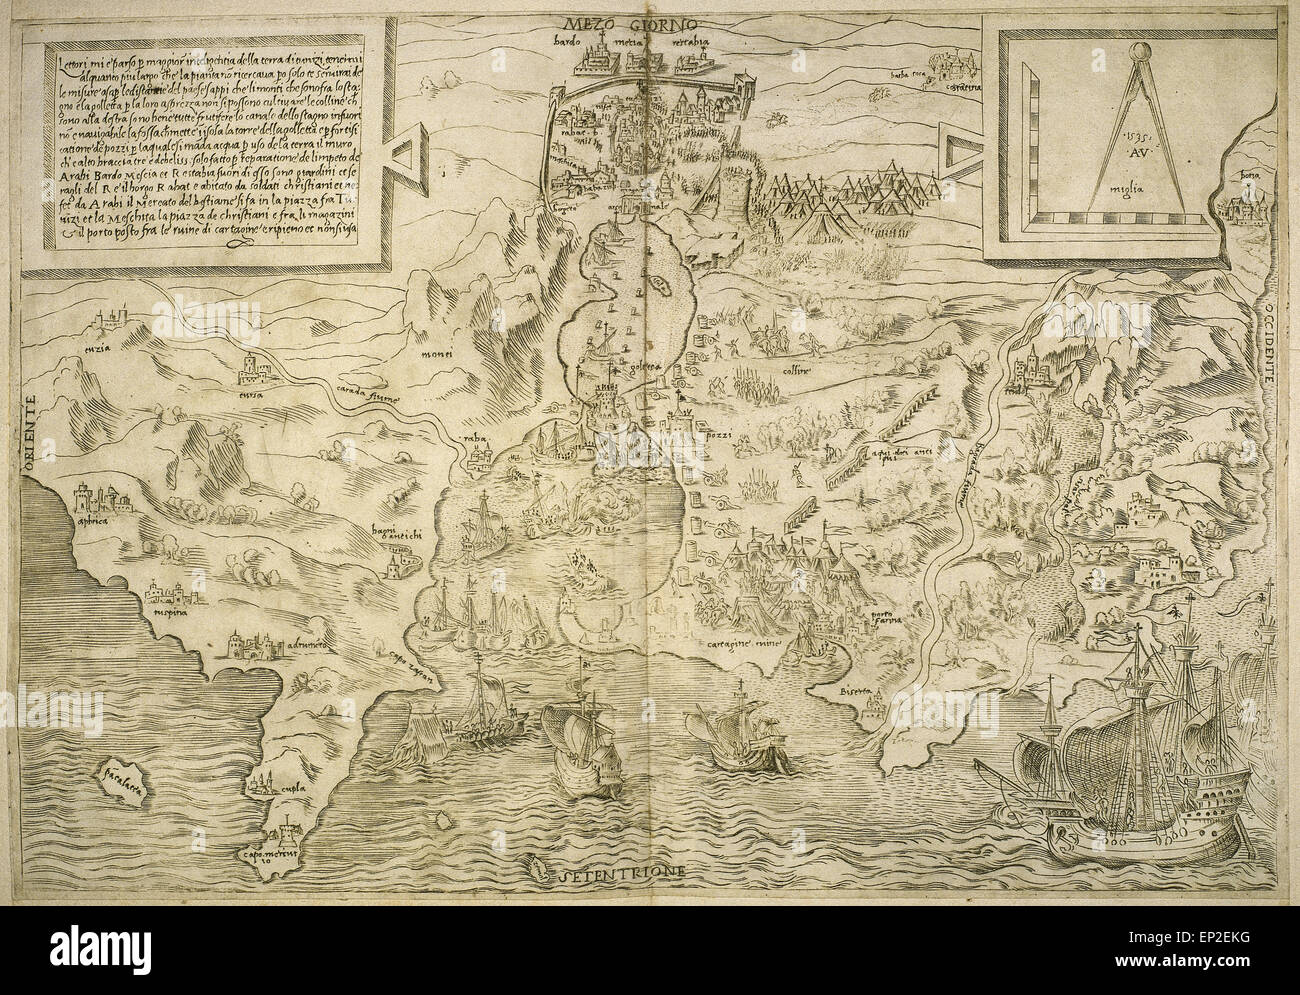 Mapa de las Islas Británicas. Siglo 16. 1543 Foto de stock